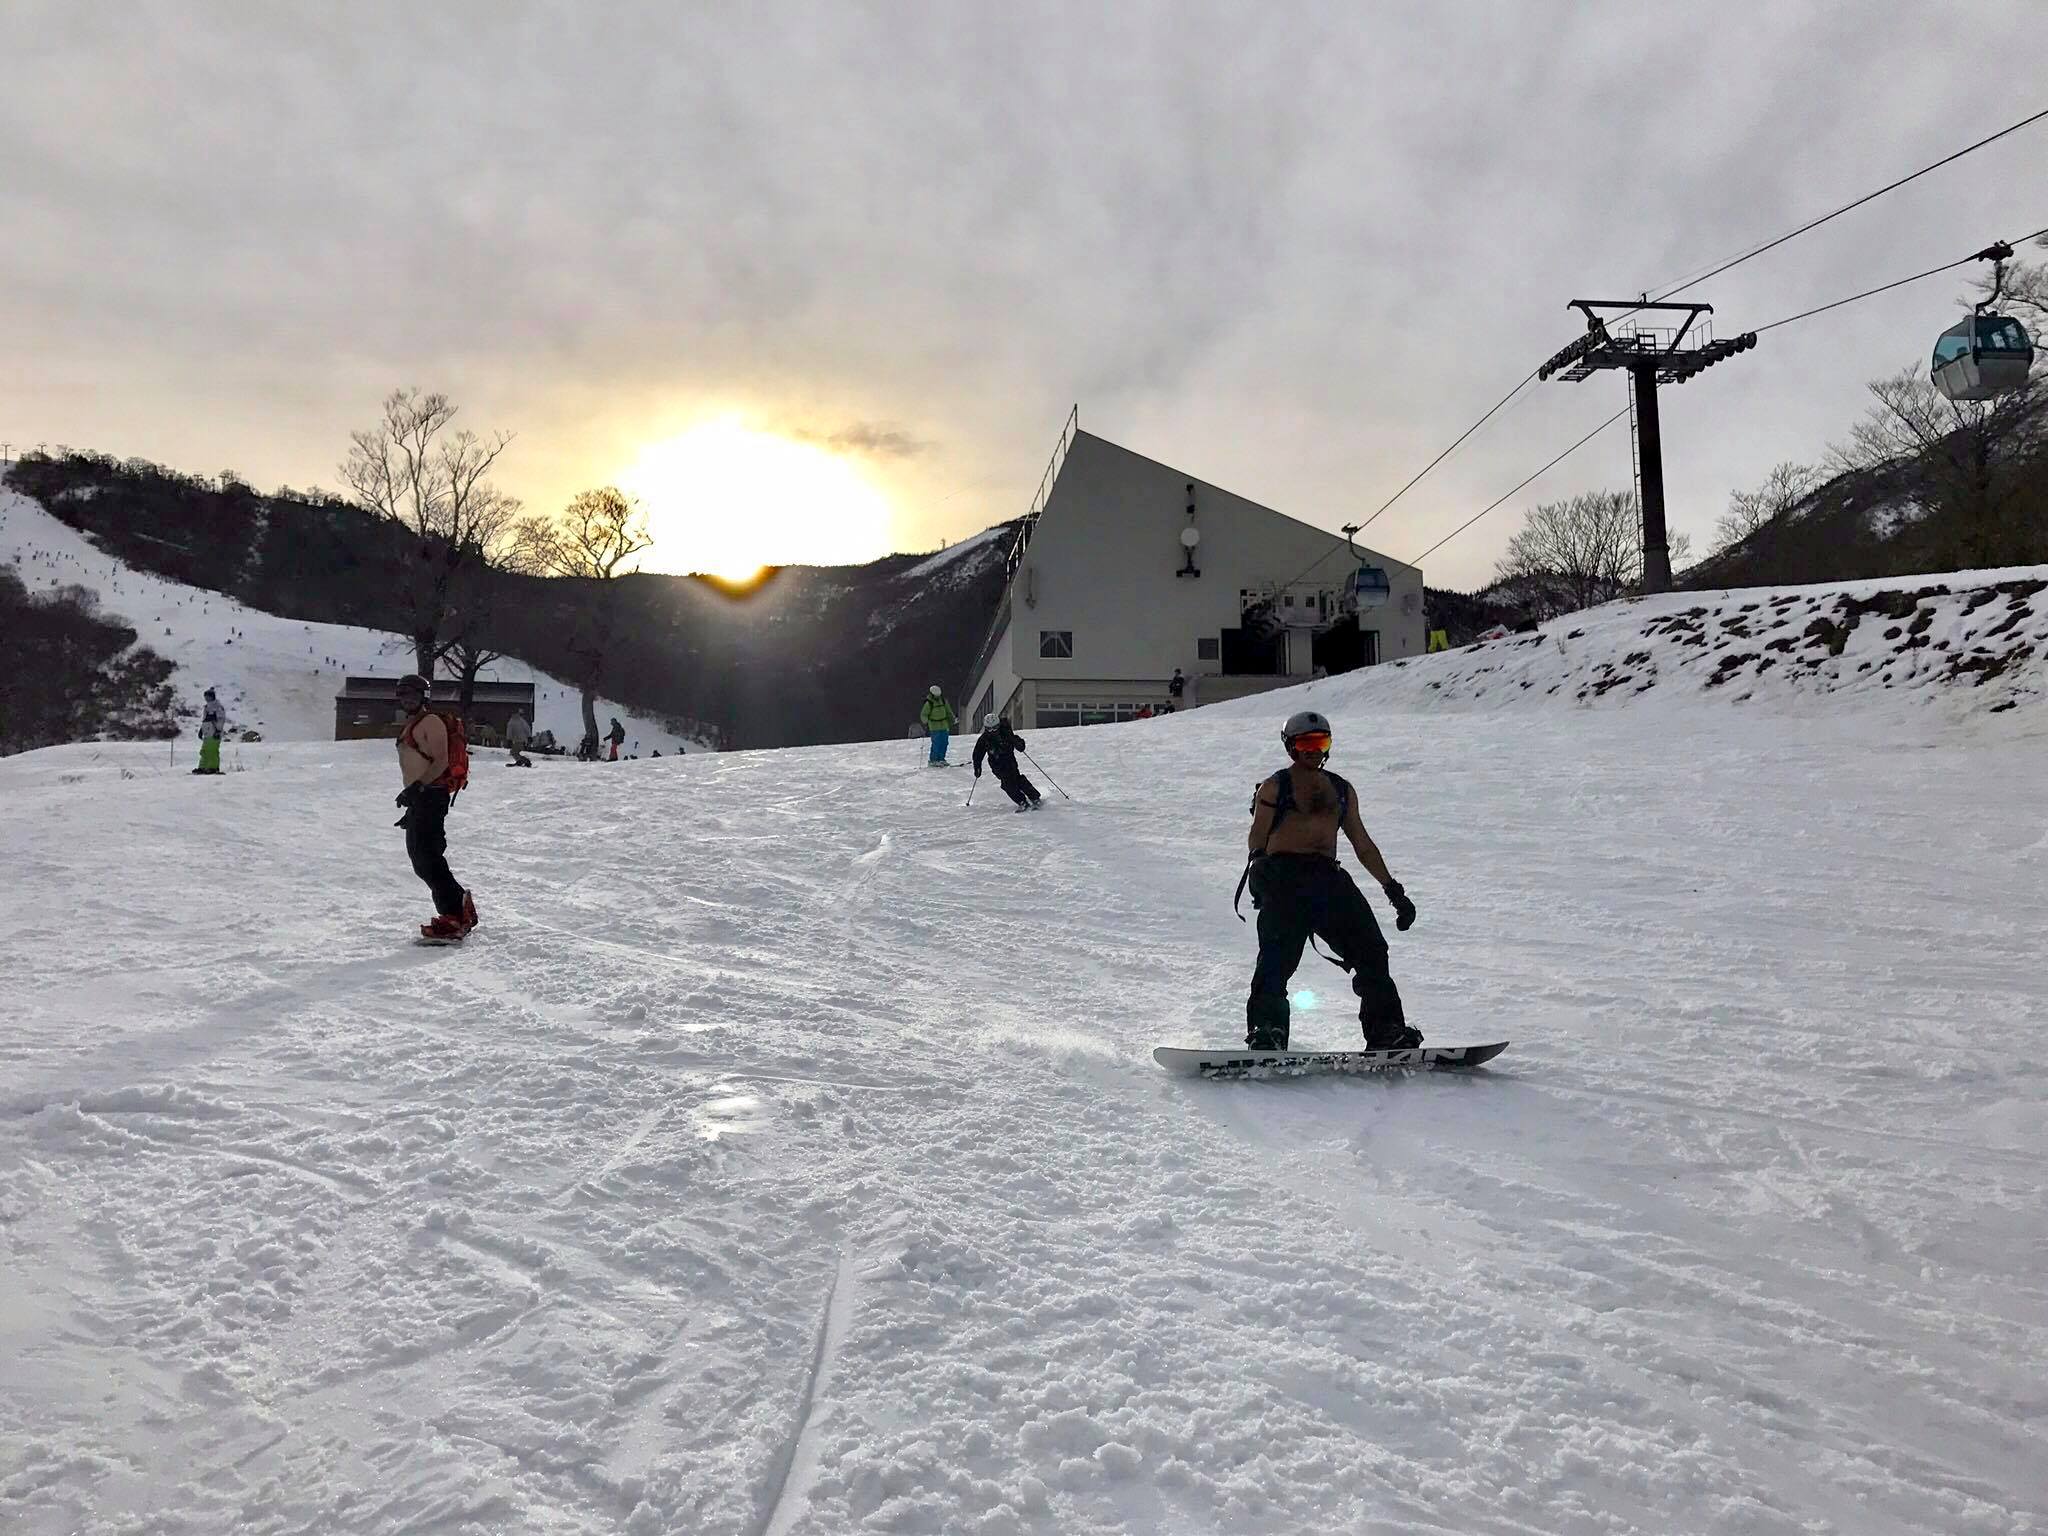 Kagura Ski/Snowboard Day Trip